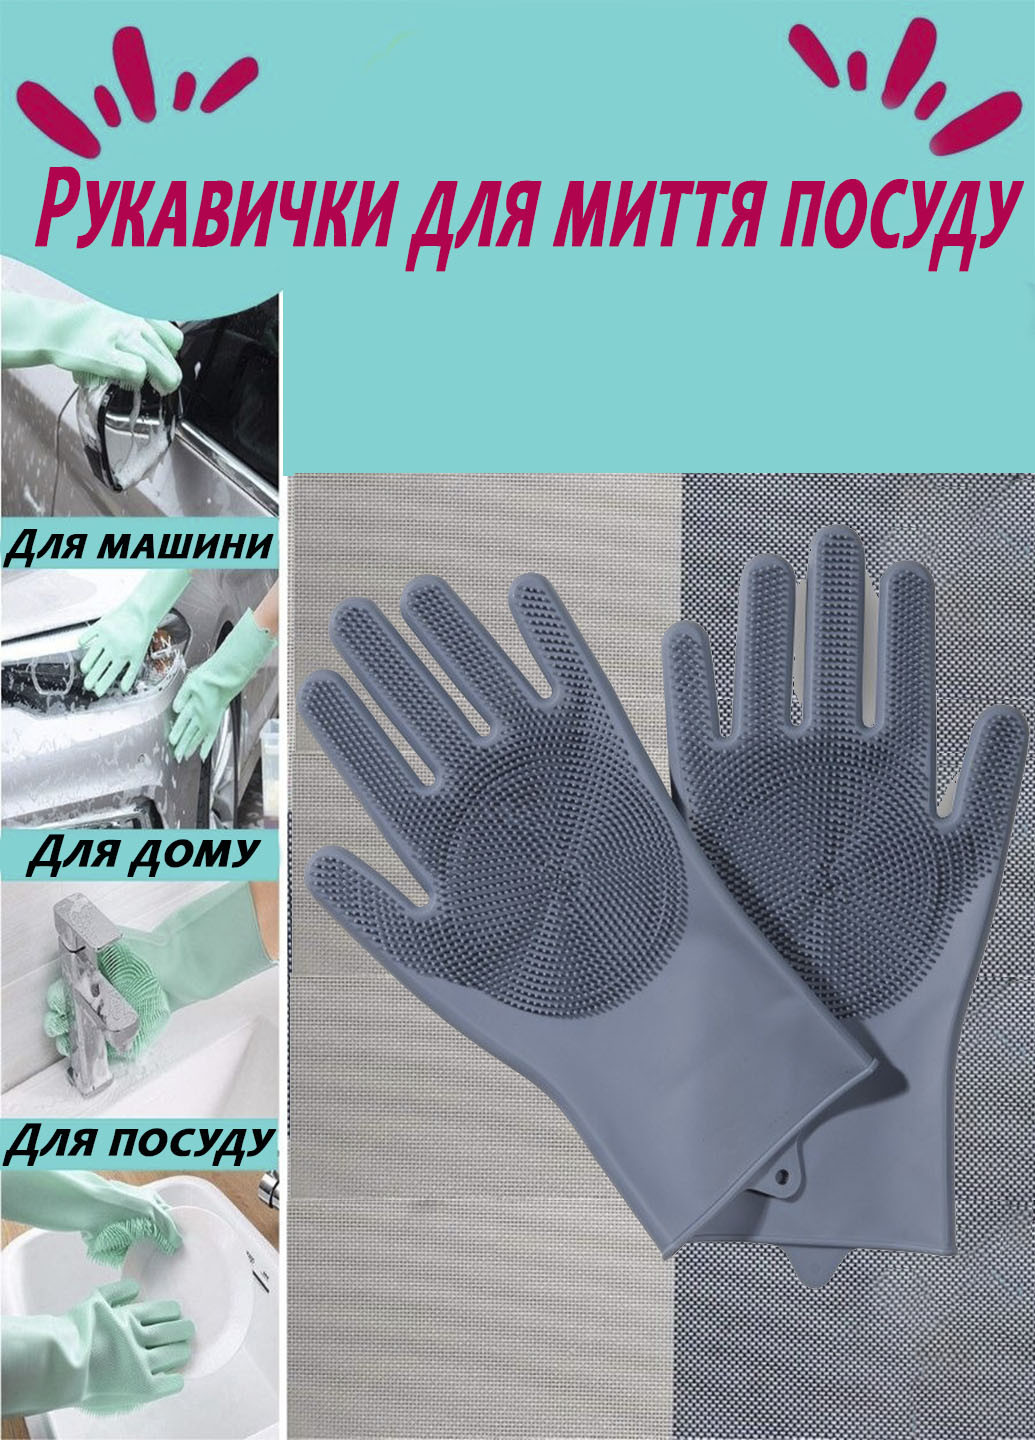 Силиконовые перчатки универсальные для мойки посуды и уборки дома Better Glove Idea (260555028)